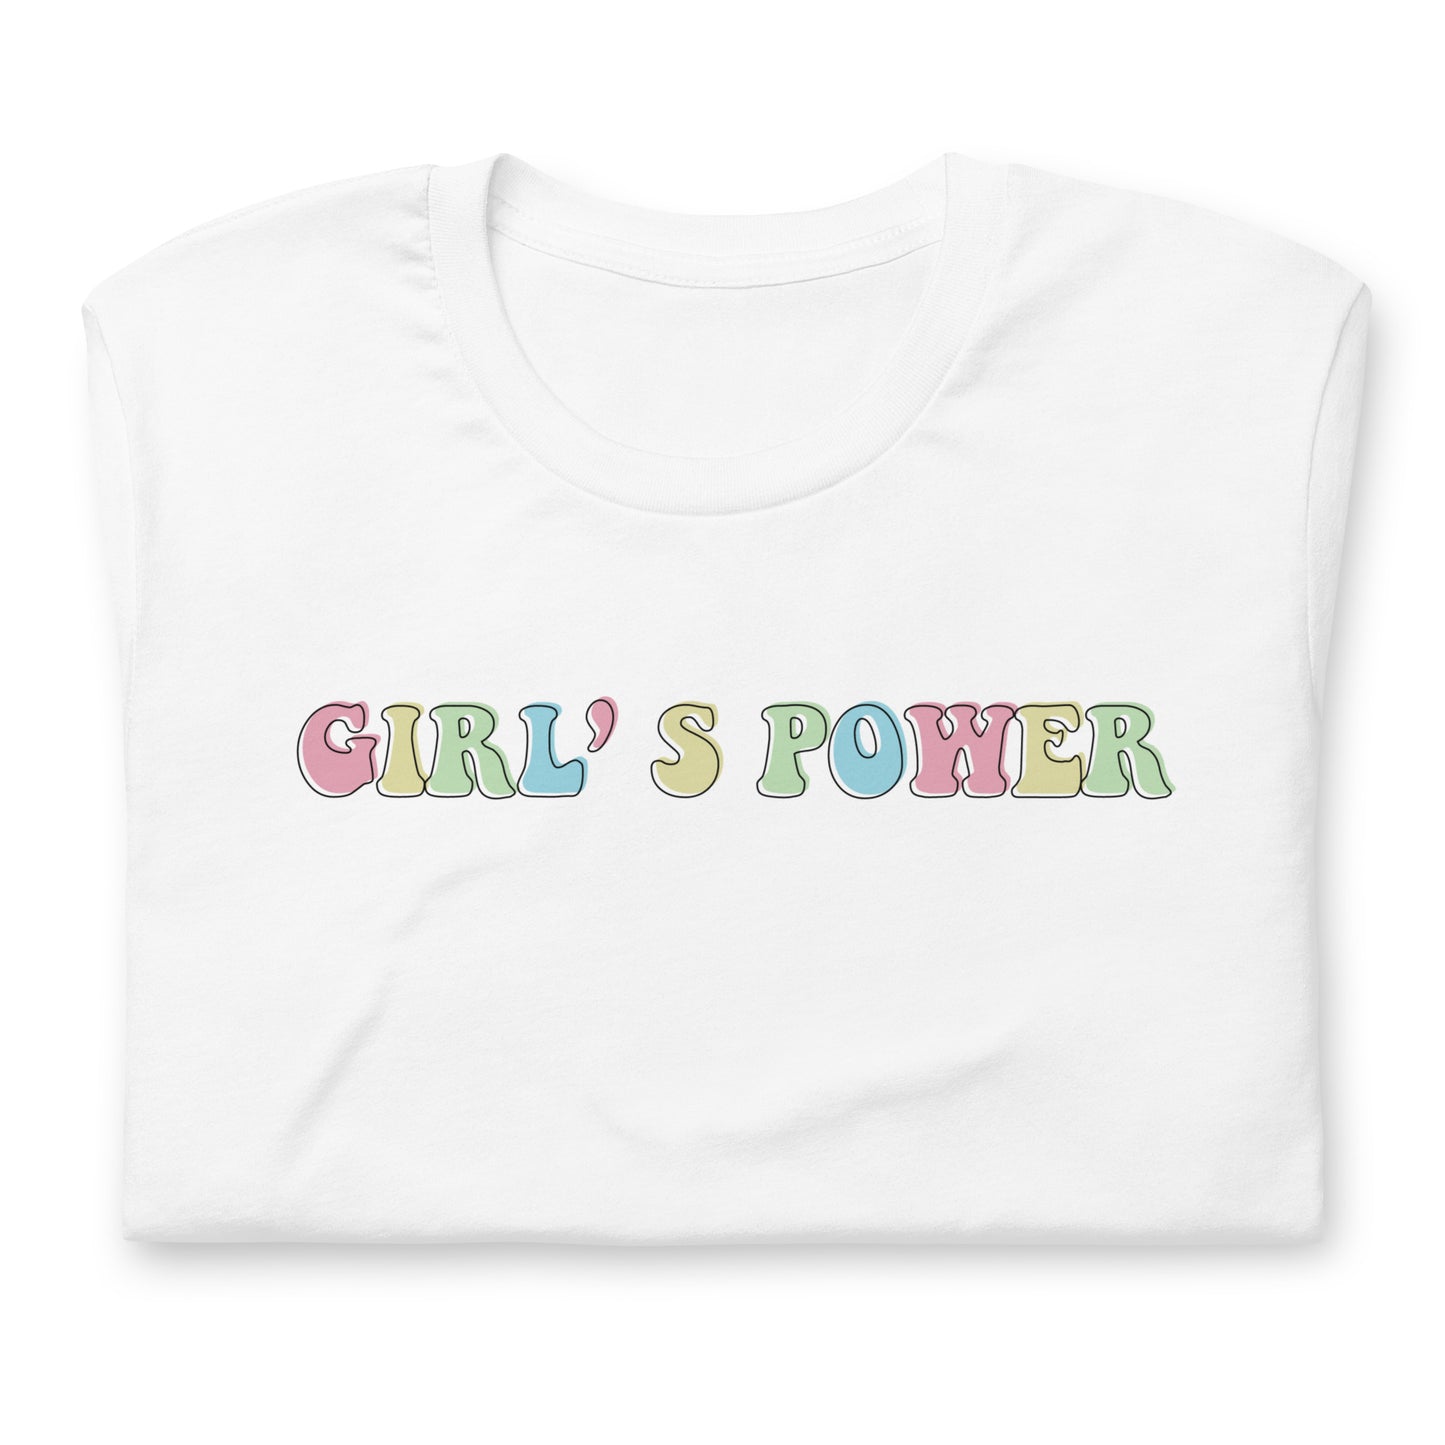 GIRL'S POWER Unisex t-shirt